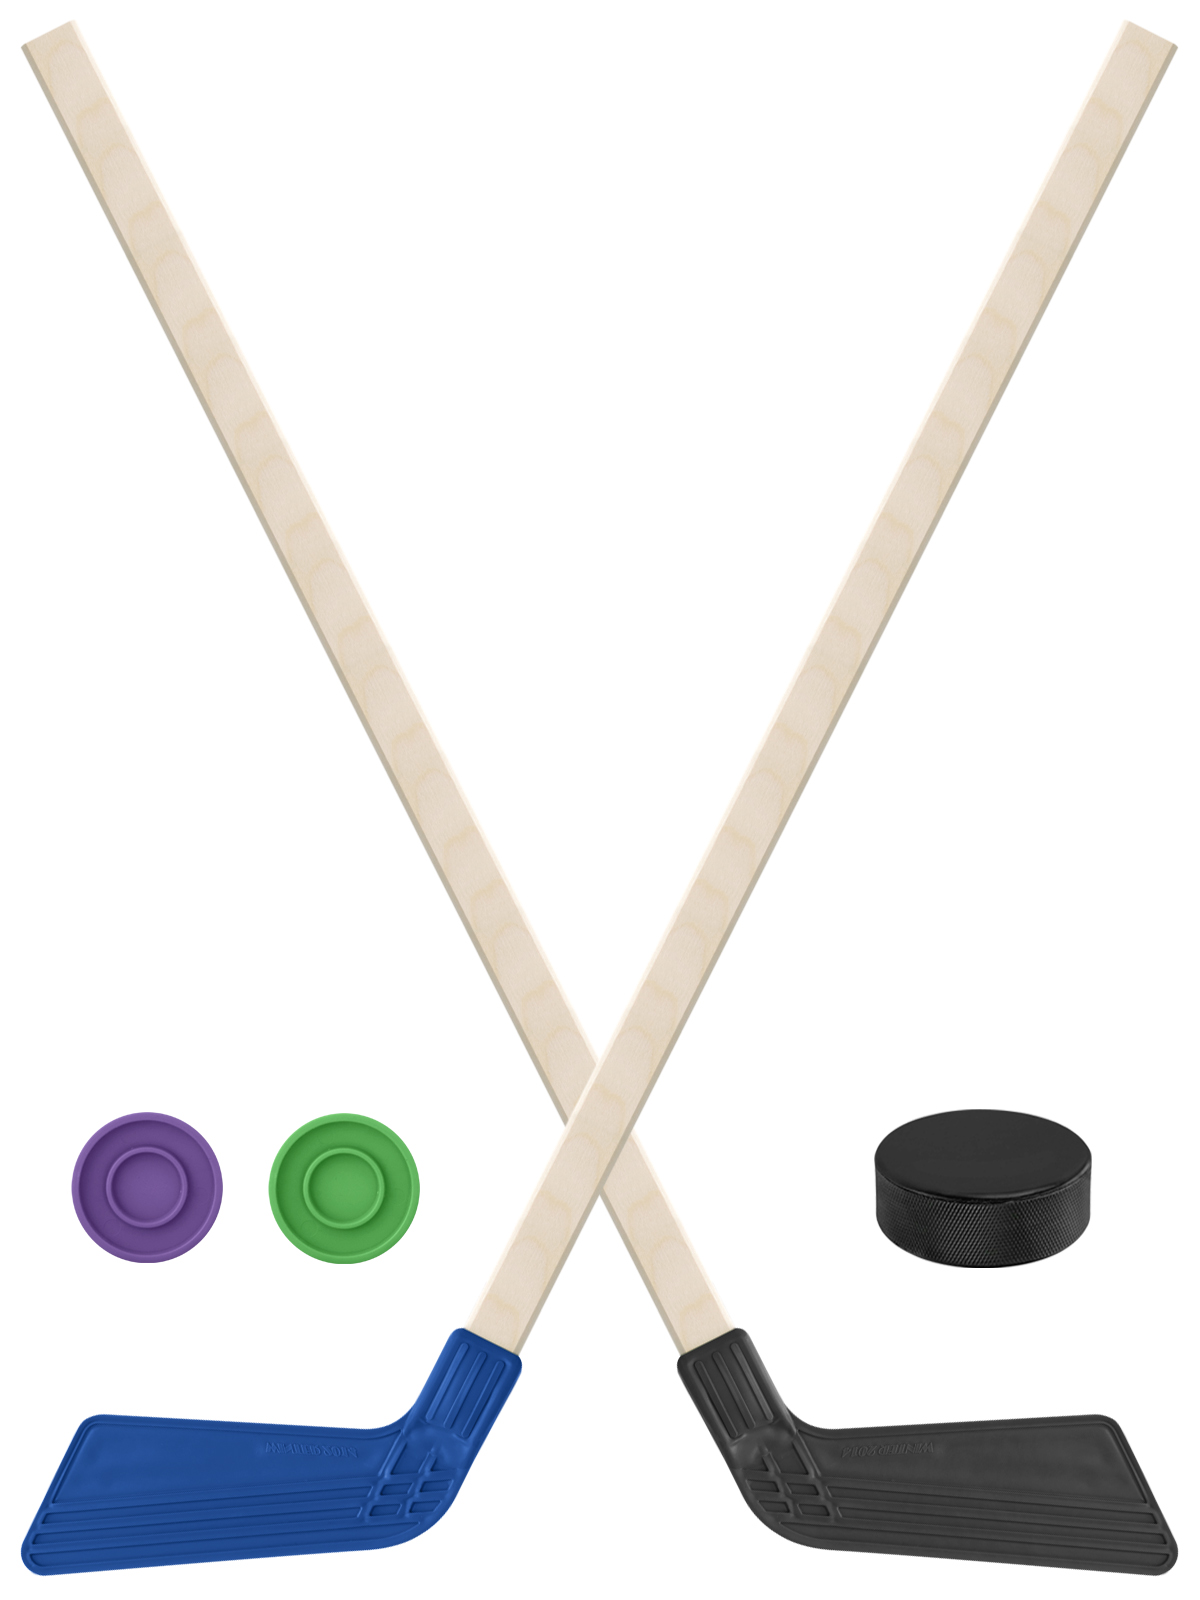 Детский хоккейный набор Задира-плюс Клюшка хоккейная 2шт(син,чёрн)+2шайбы+Шайба 75 мм клюшка флорбольная oxdog ultralight hes 29 uv 92 oval mbc левый